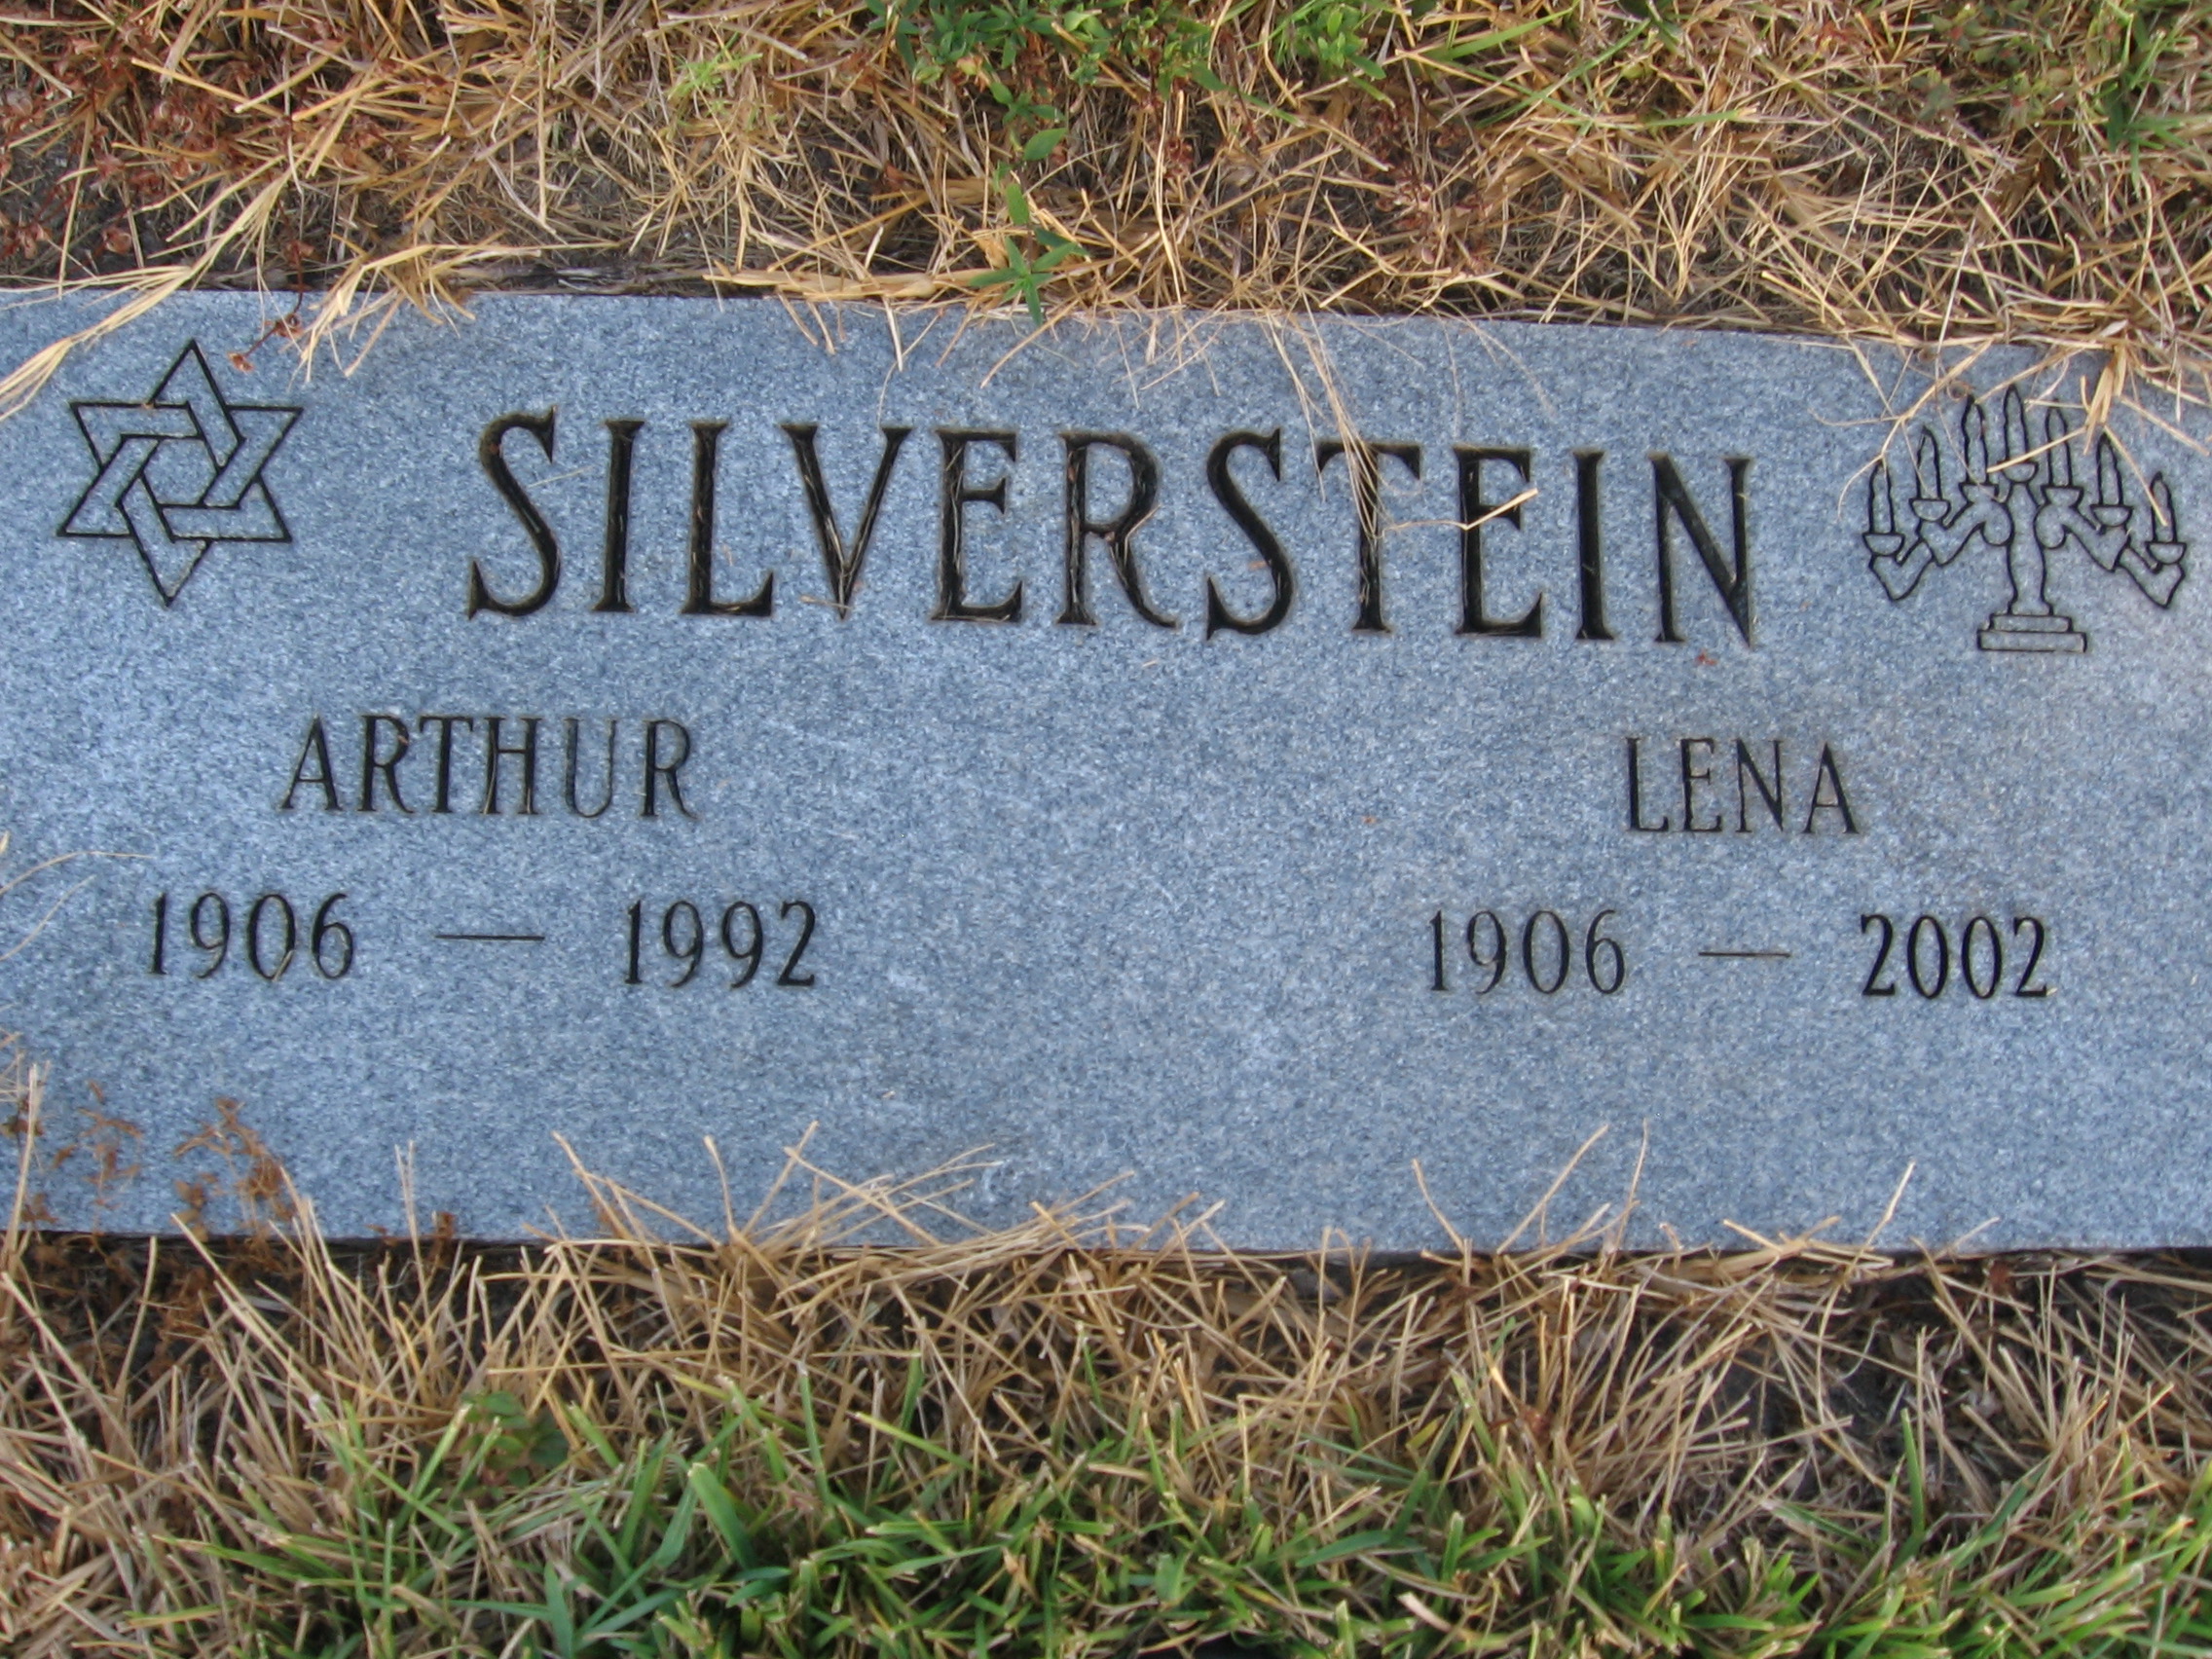 Lena Silverstein